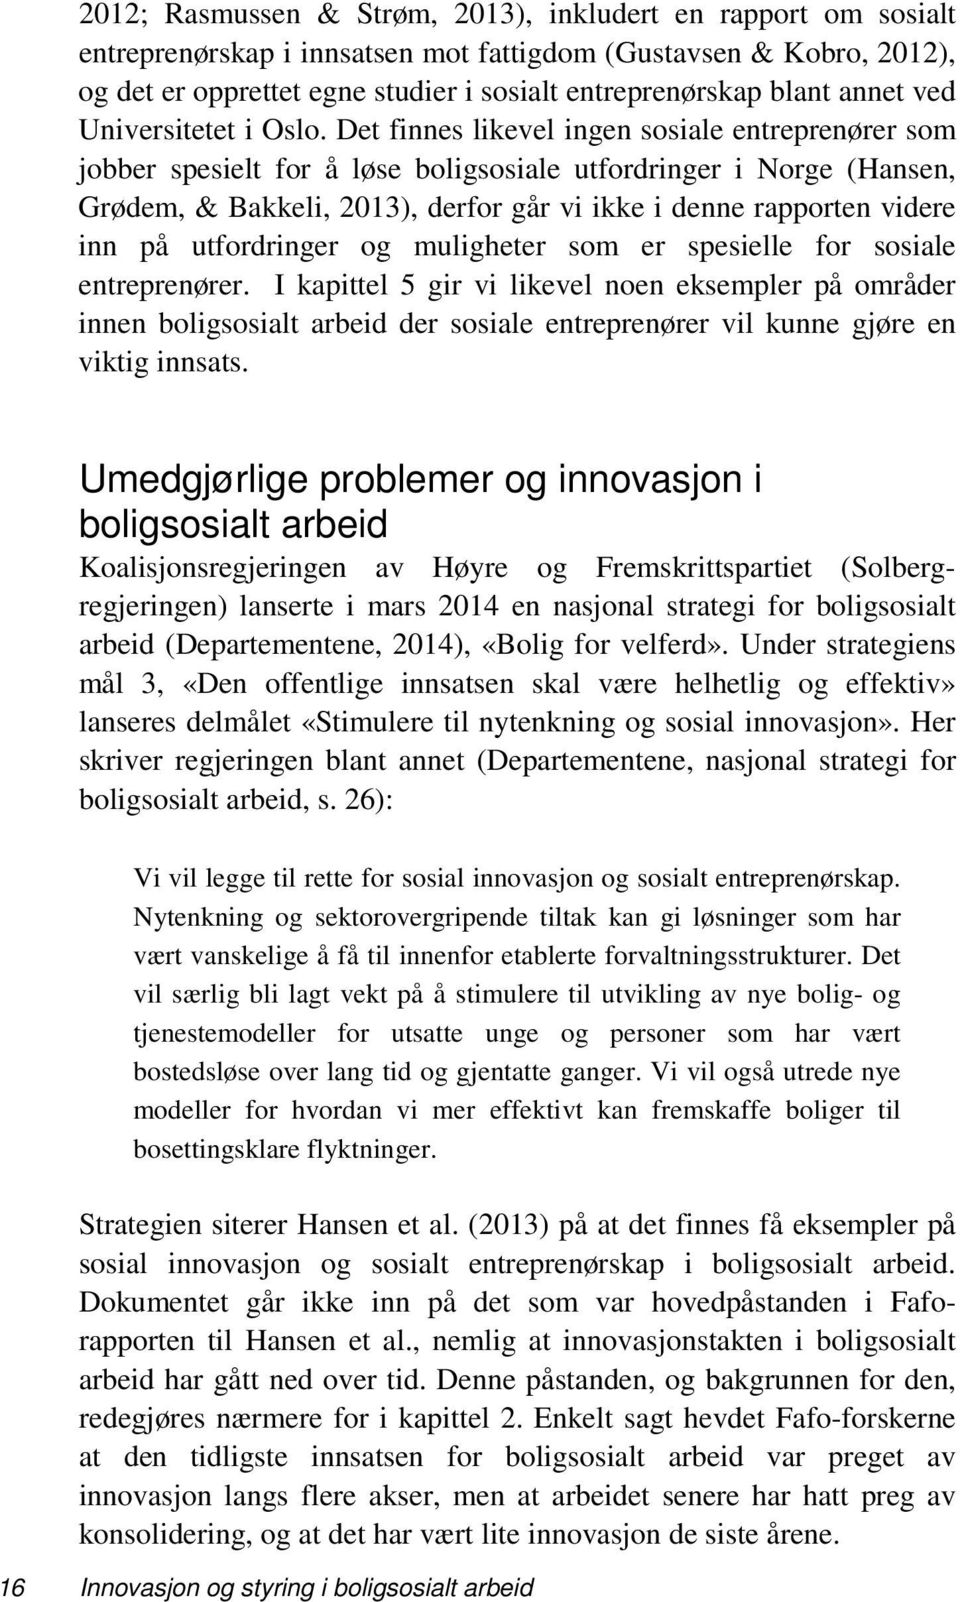 Det finnes likevel ingen sosiale entreprenører som jobber spesielt for å løse boligsosiale utfordringer i Norge (Hansen, Grødem, & Bakkeli, 2013), derfor går vi ikke i denne rapporten videre inn på